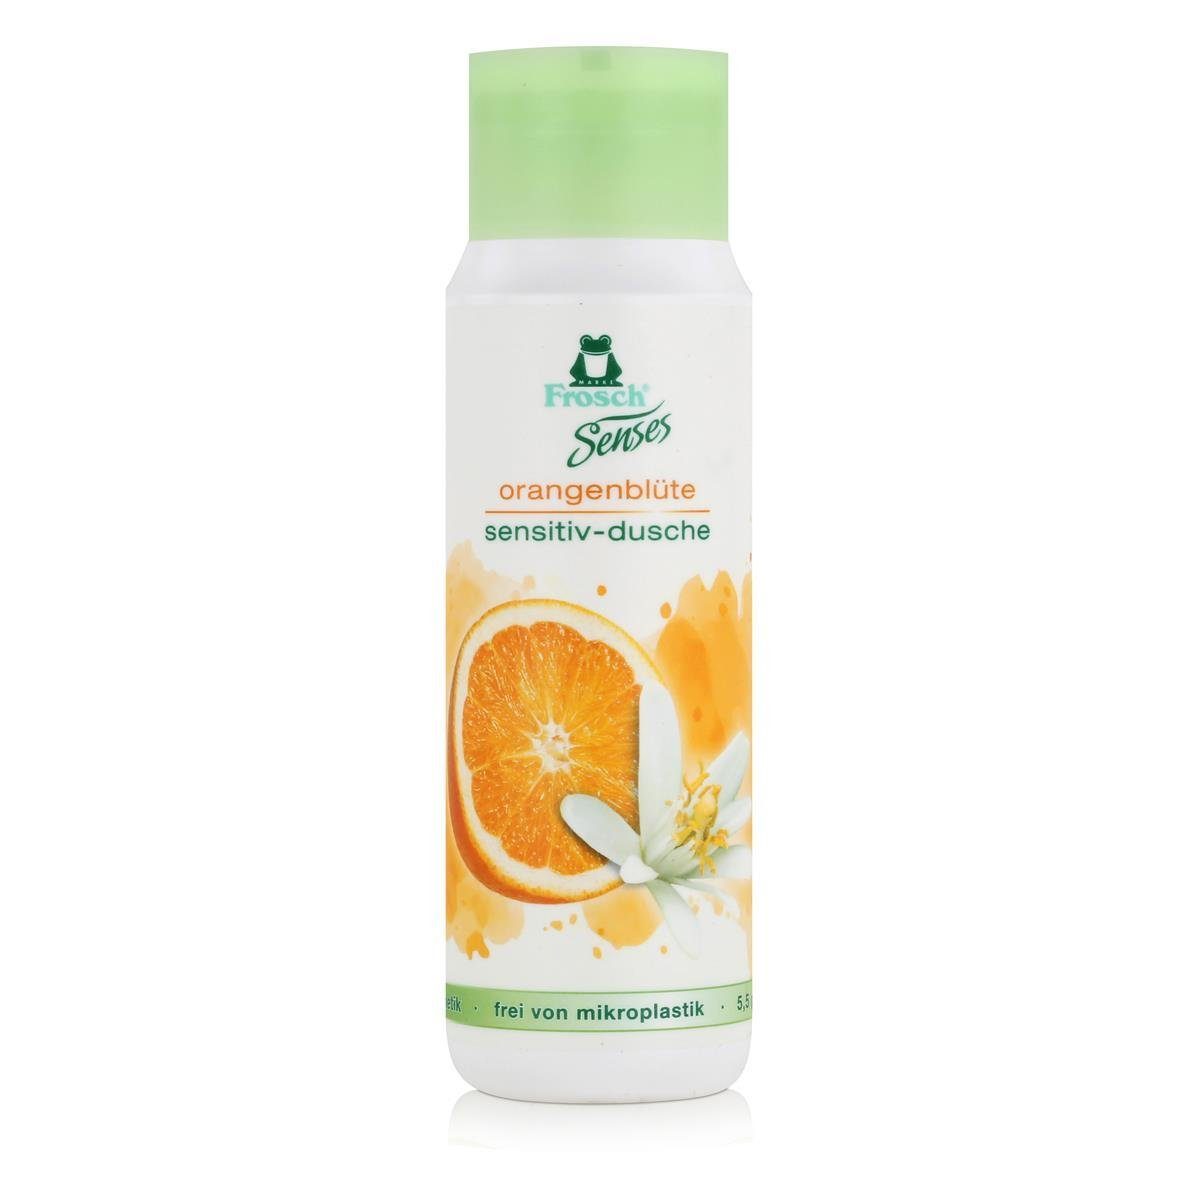 - (1er Senses Pack) Duschgel sensitiv-dusche Frosch FROSCH 300ml Duschcreme orangenblüte